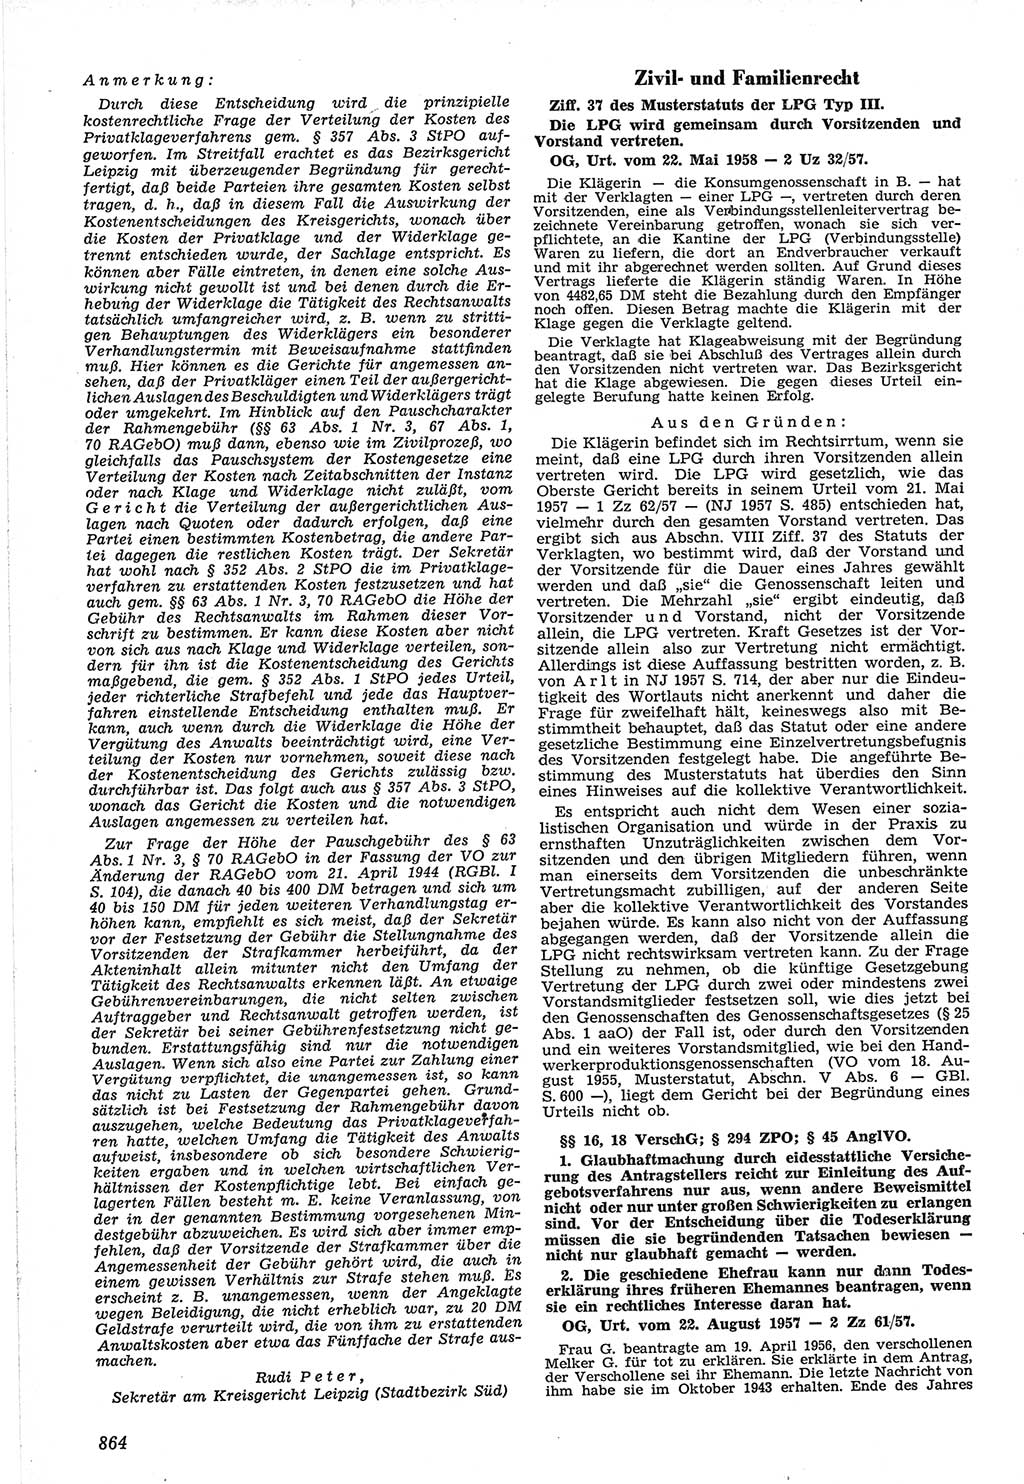 Neue Justiz (NJ), Zeitschrift für Recht und Rechtswissenschaft [Deutsche Demokratische Republik (DDR)], 12. Jahrgang 1958, Seite 864 (NJ DDR 1958, S. 864)